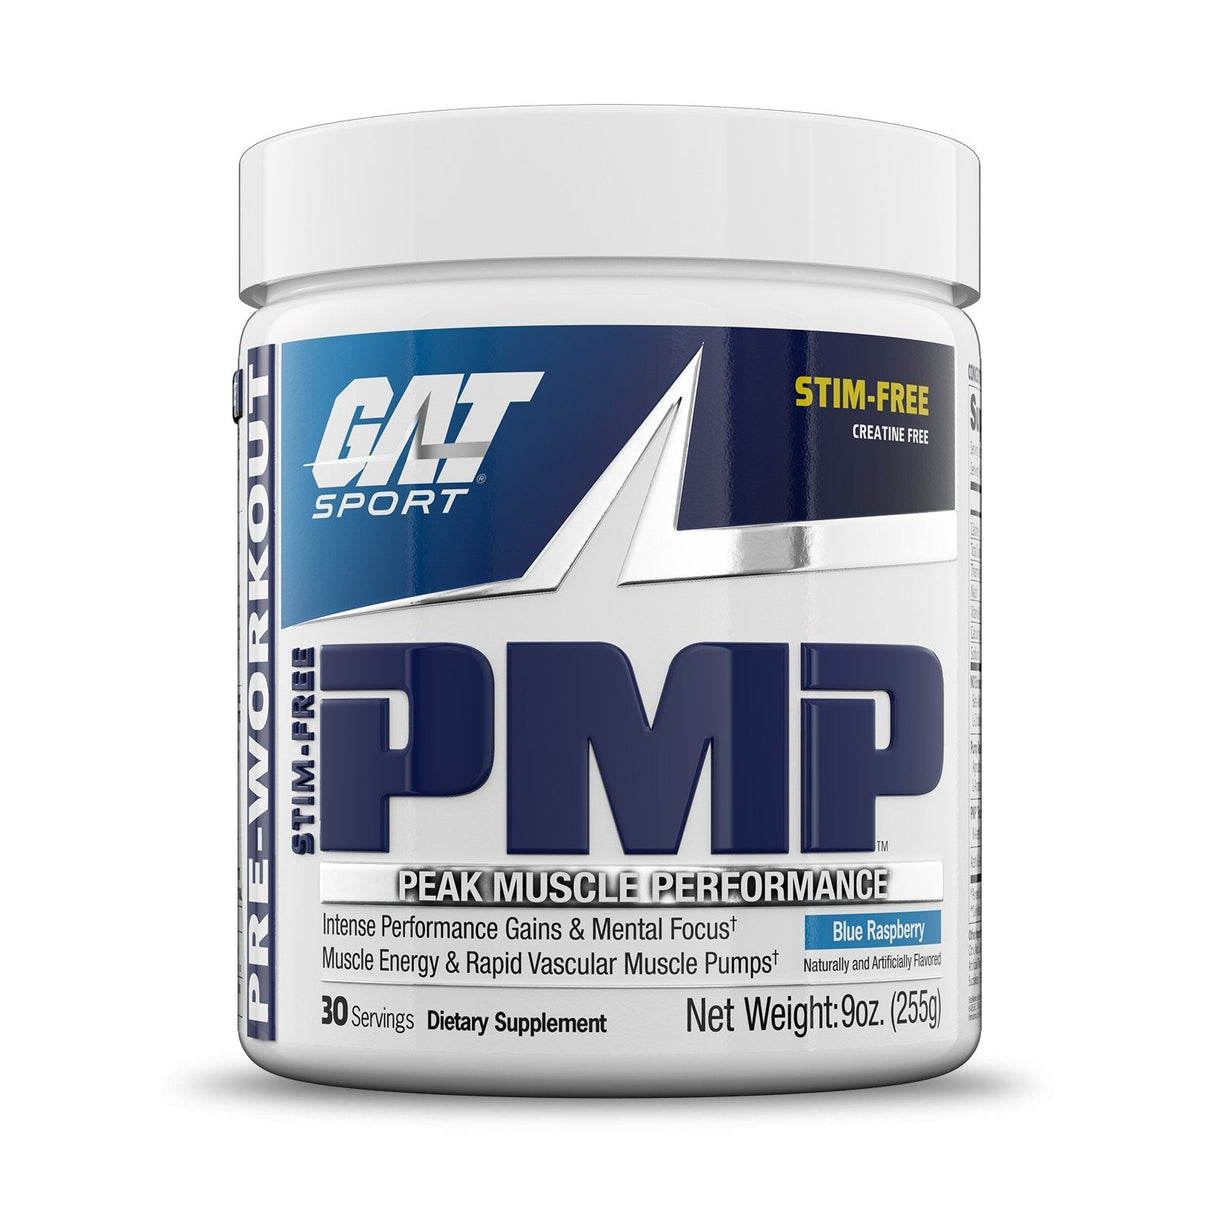 GAT SPORT PMP Pre-Workout - blue raspberry stim-free